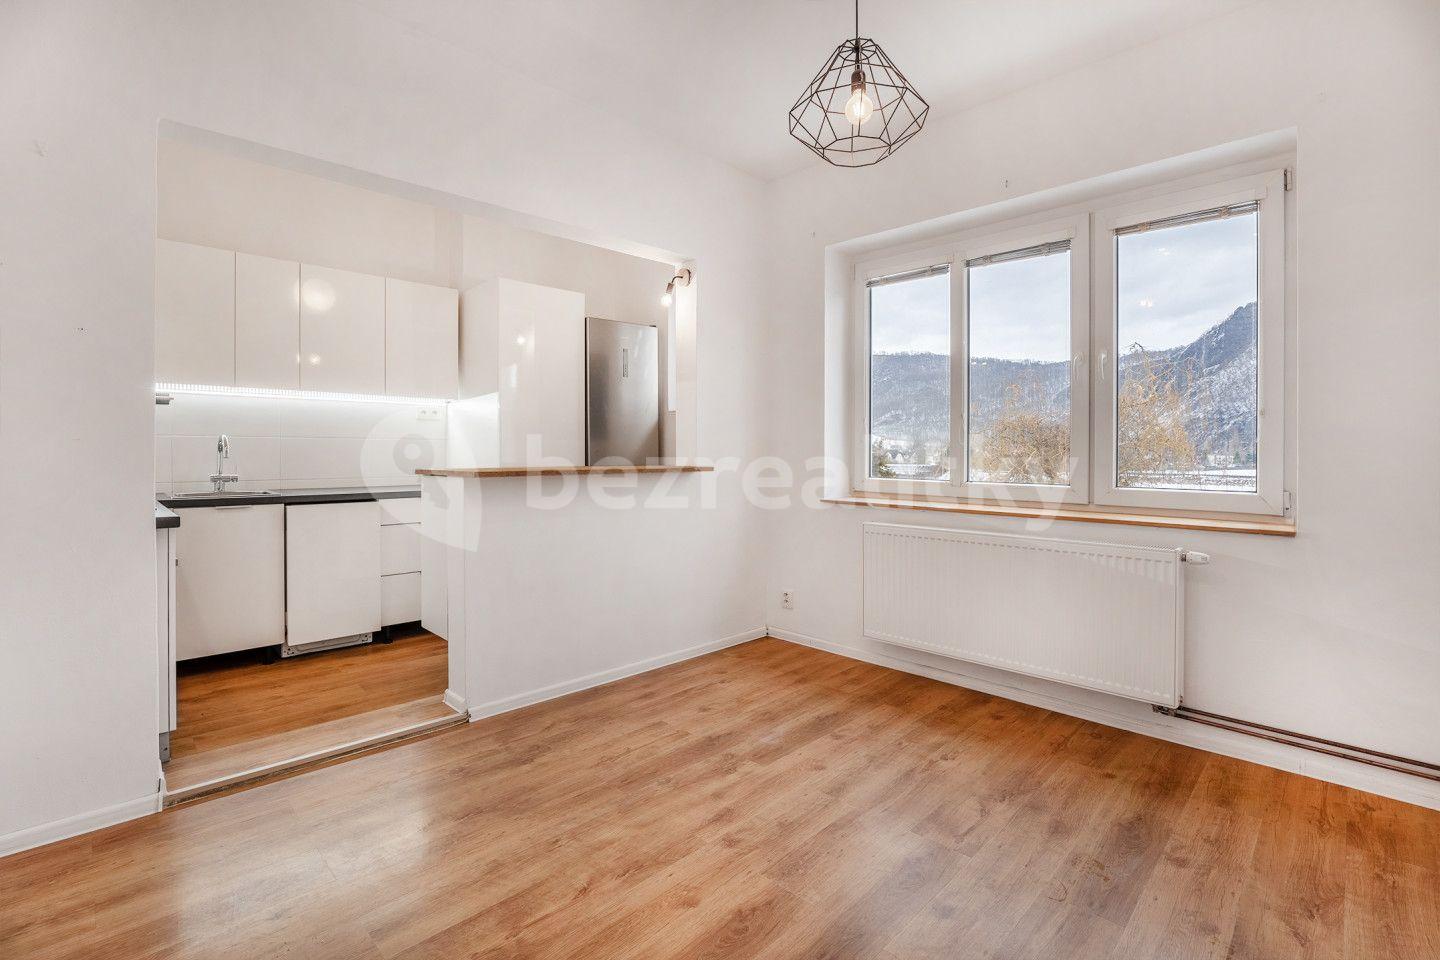 1 bedroom with open-plan kitchen flat for sale, 46 m², Velké Březno, Ústecký Region